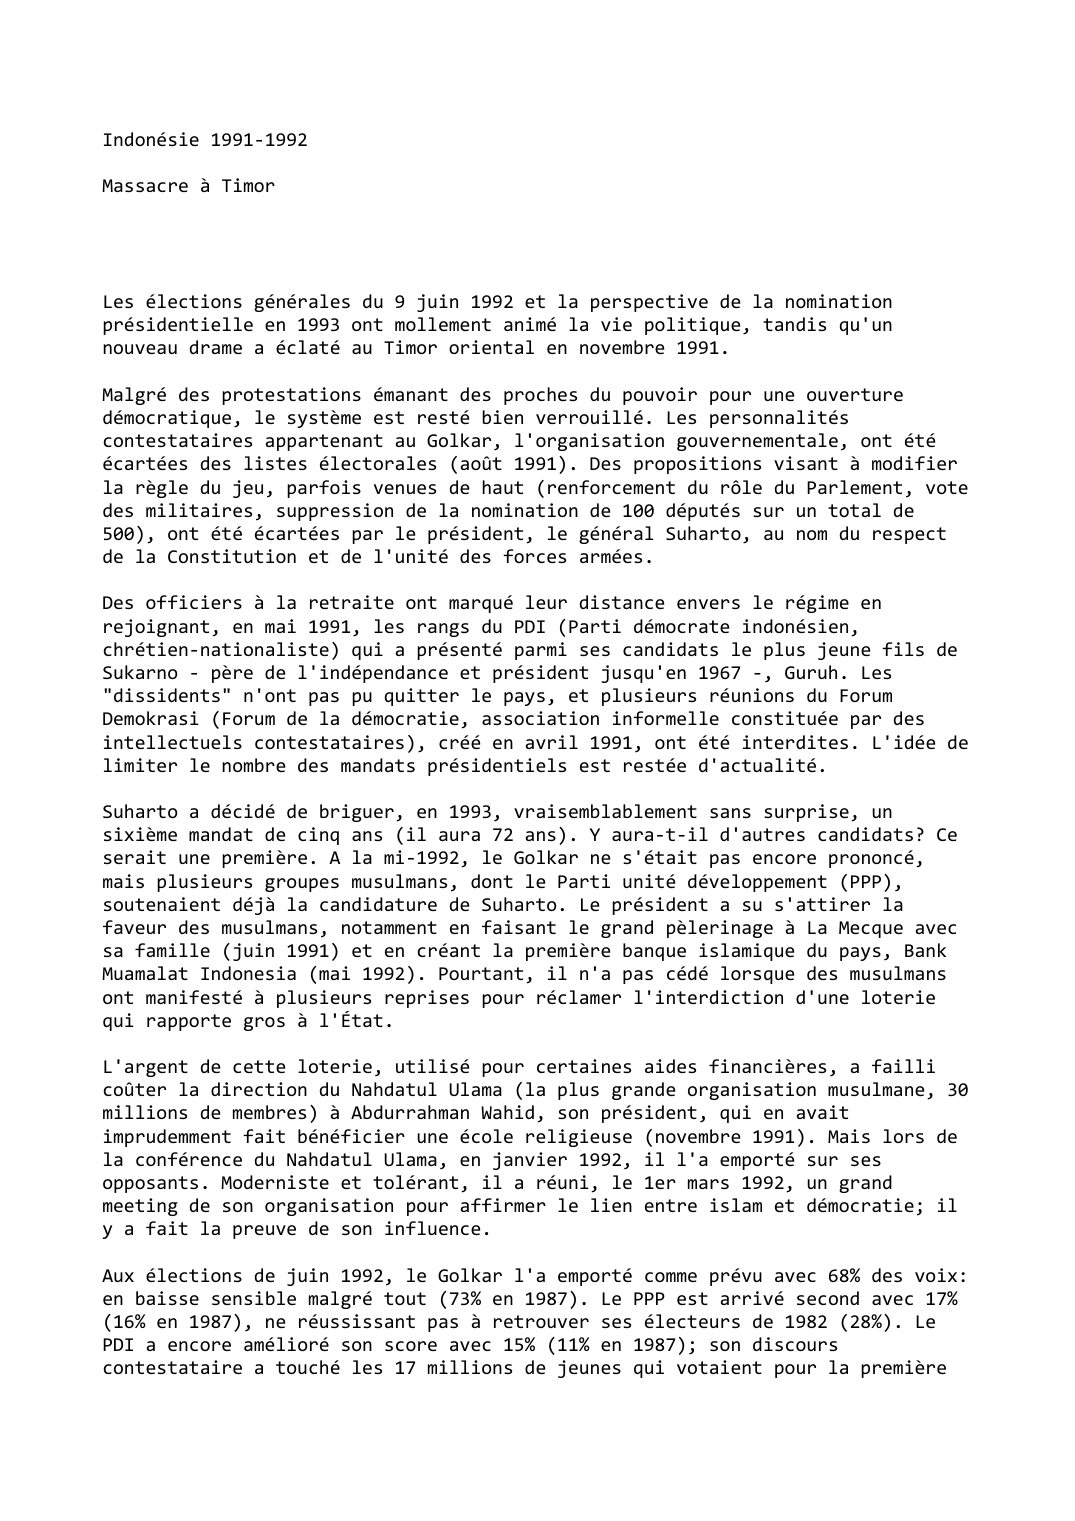 Prévisualisation du document Indonésie (1991-1992)

Massacre à Timor